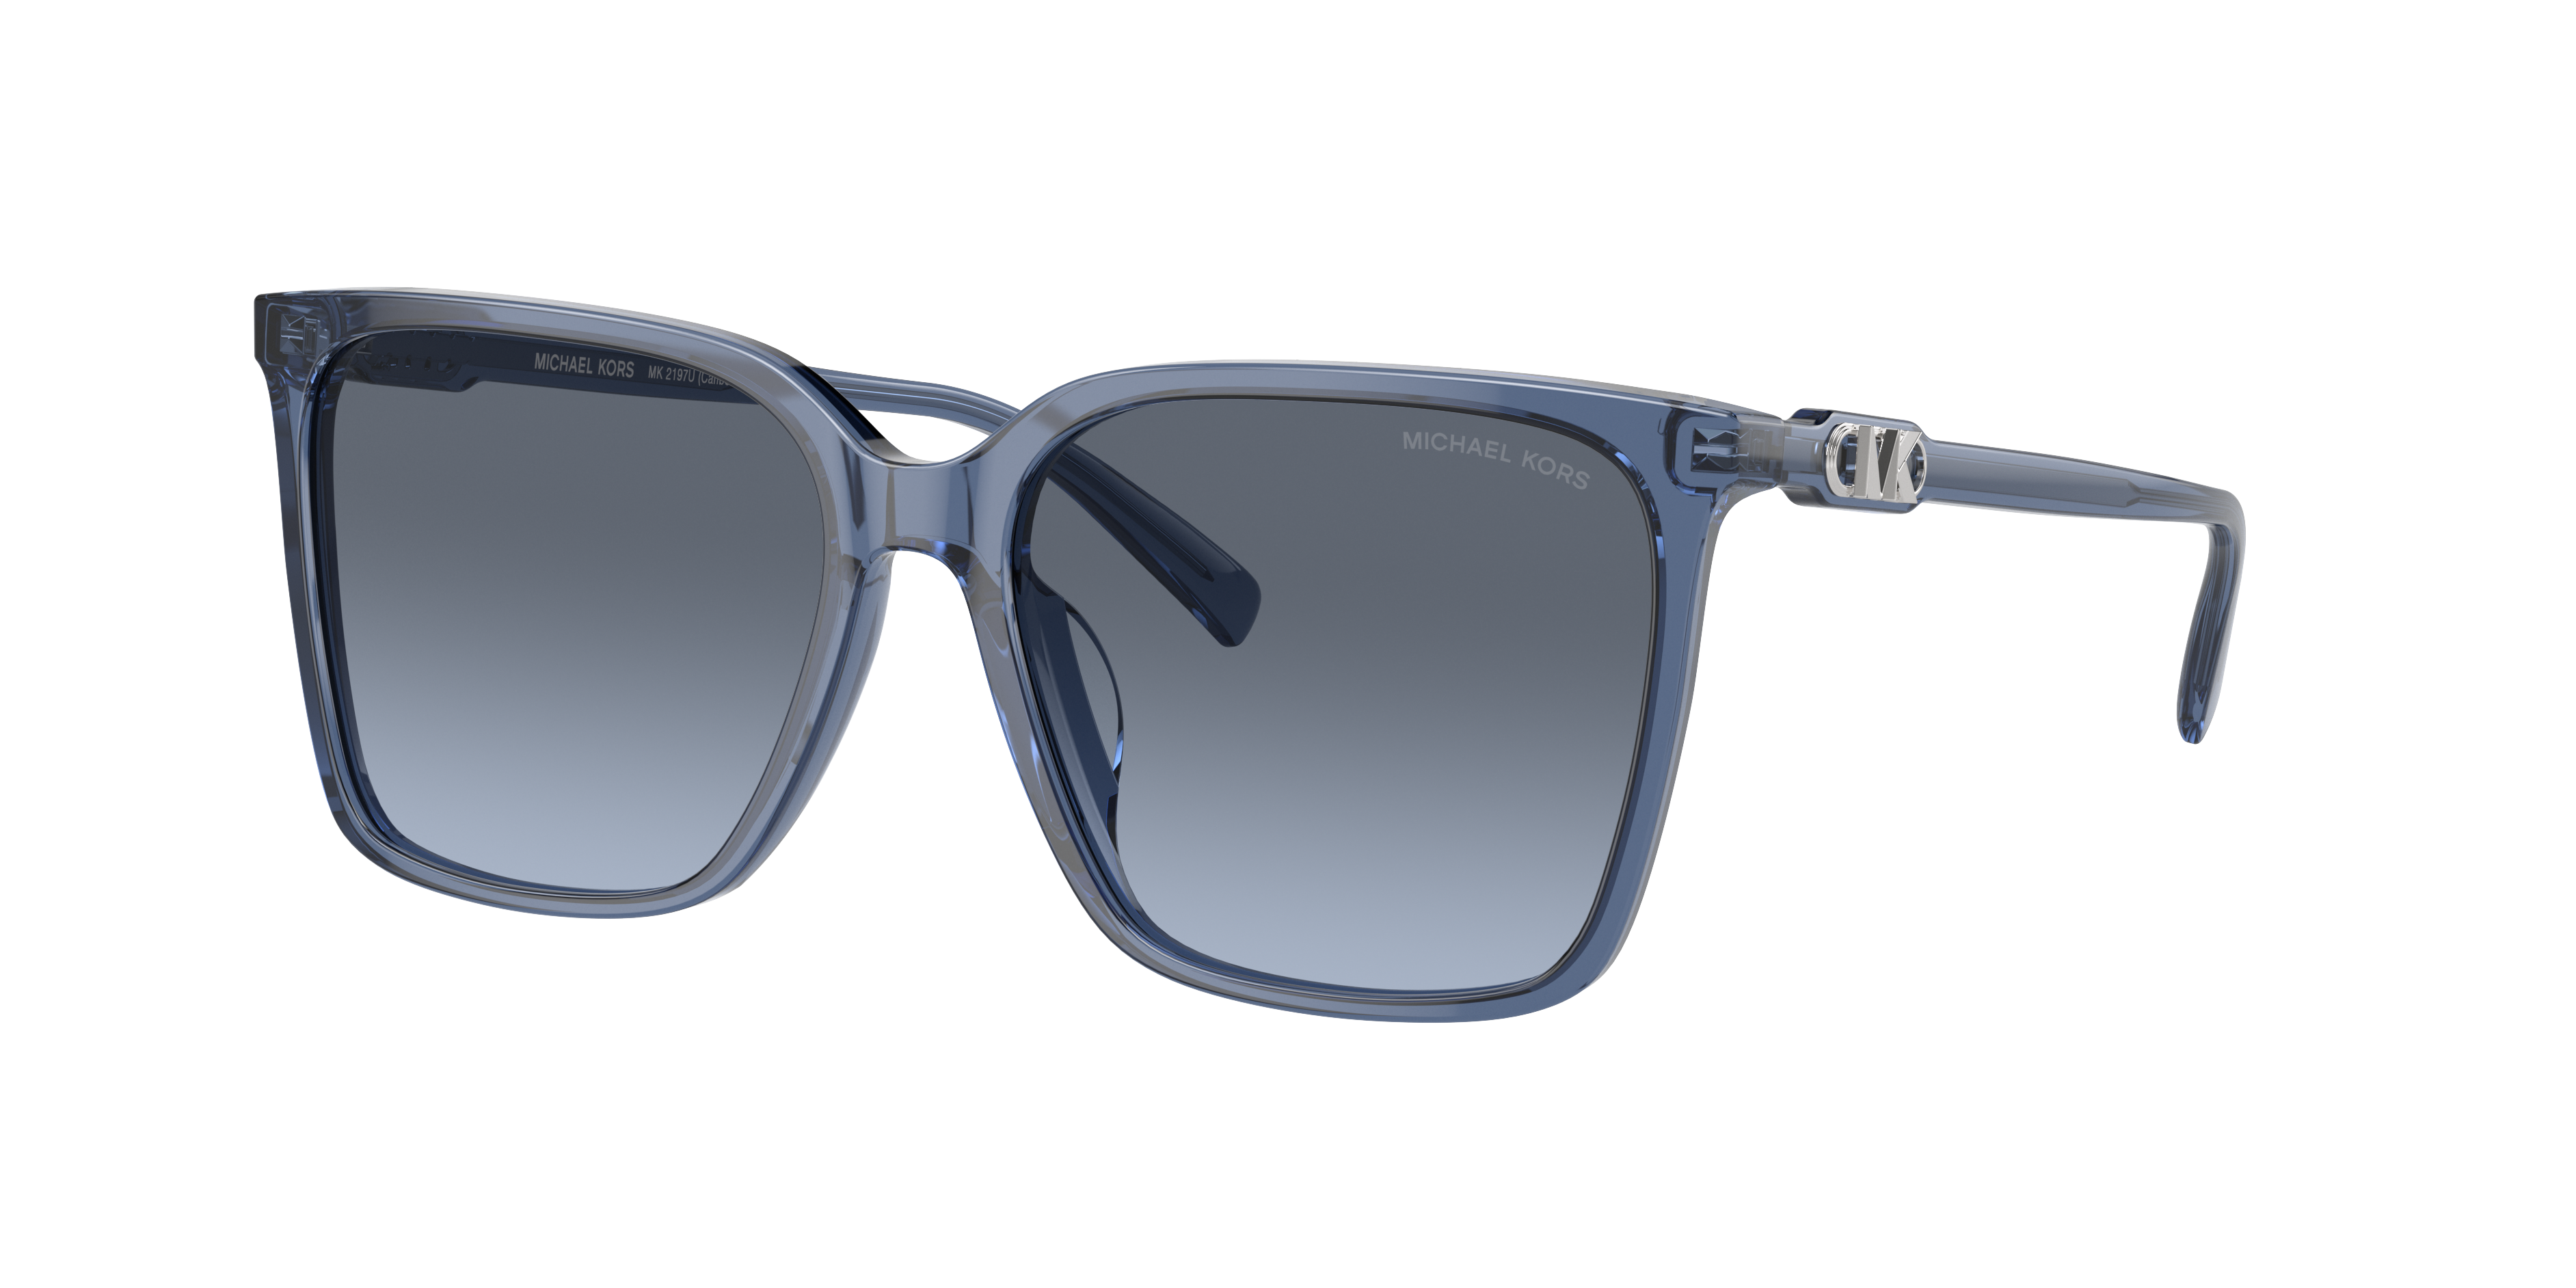 MICHAEL KORS MK2197U Canberra Blue Transparent - Woman Sunglasses, Blue  Gradient Lens